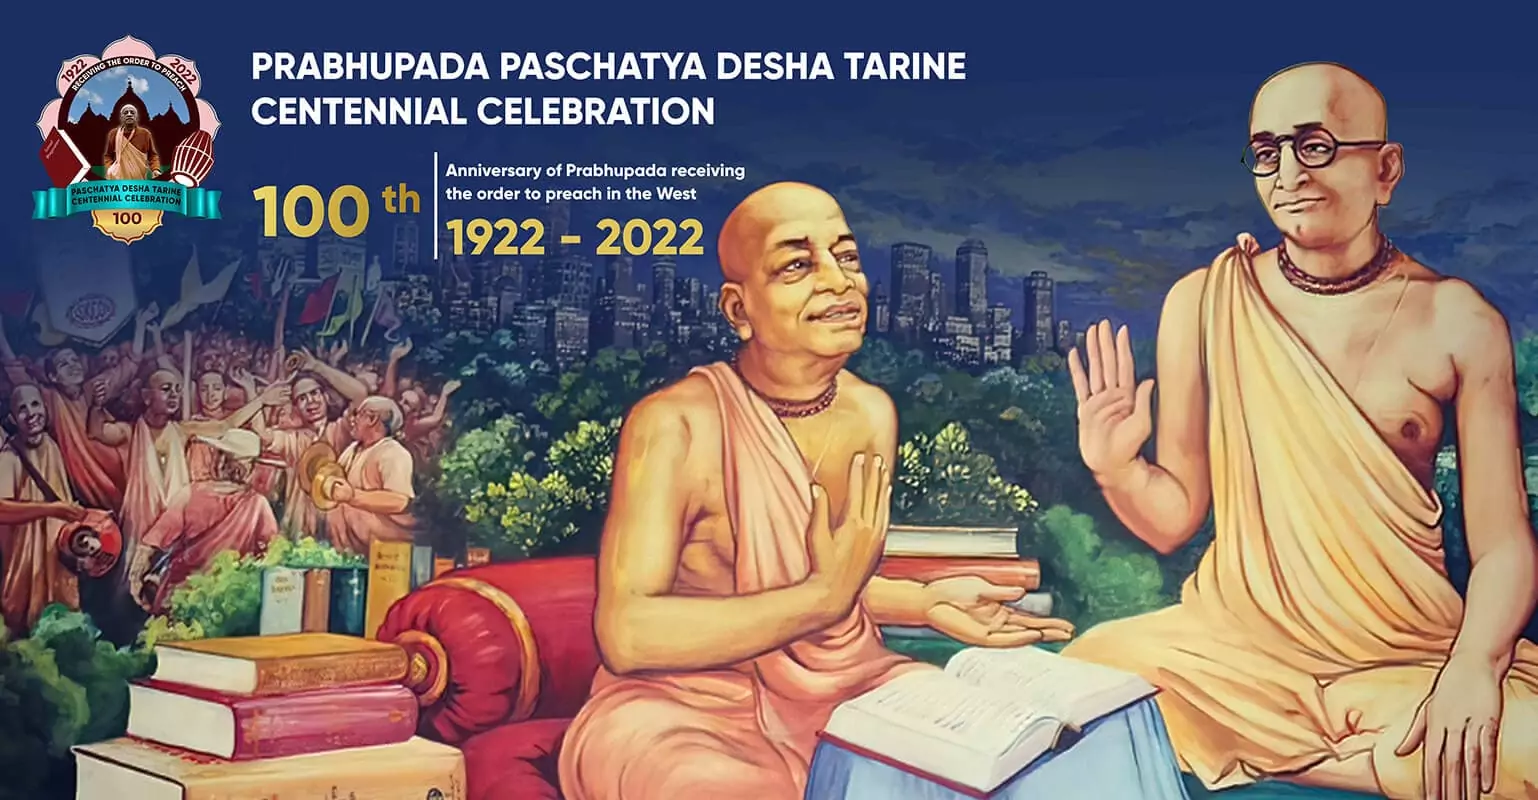 O 100º Aniversário de Srila Prabhupada Recebendo a Ordem de Pregar, 1922-2022